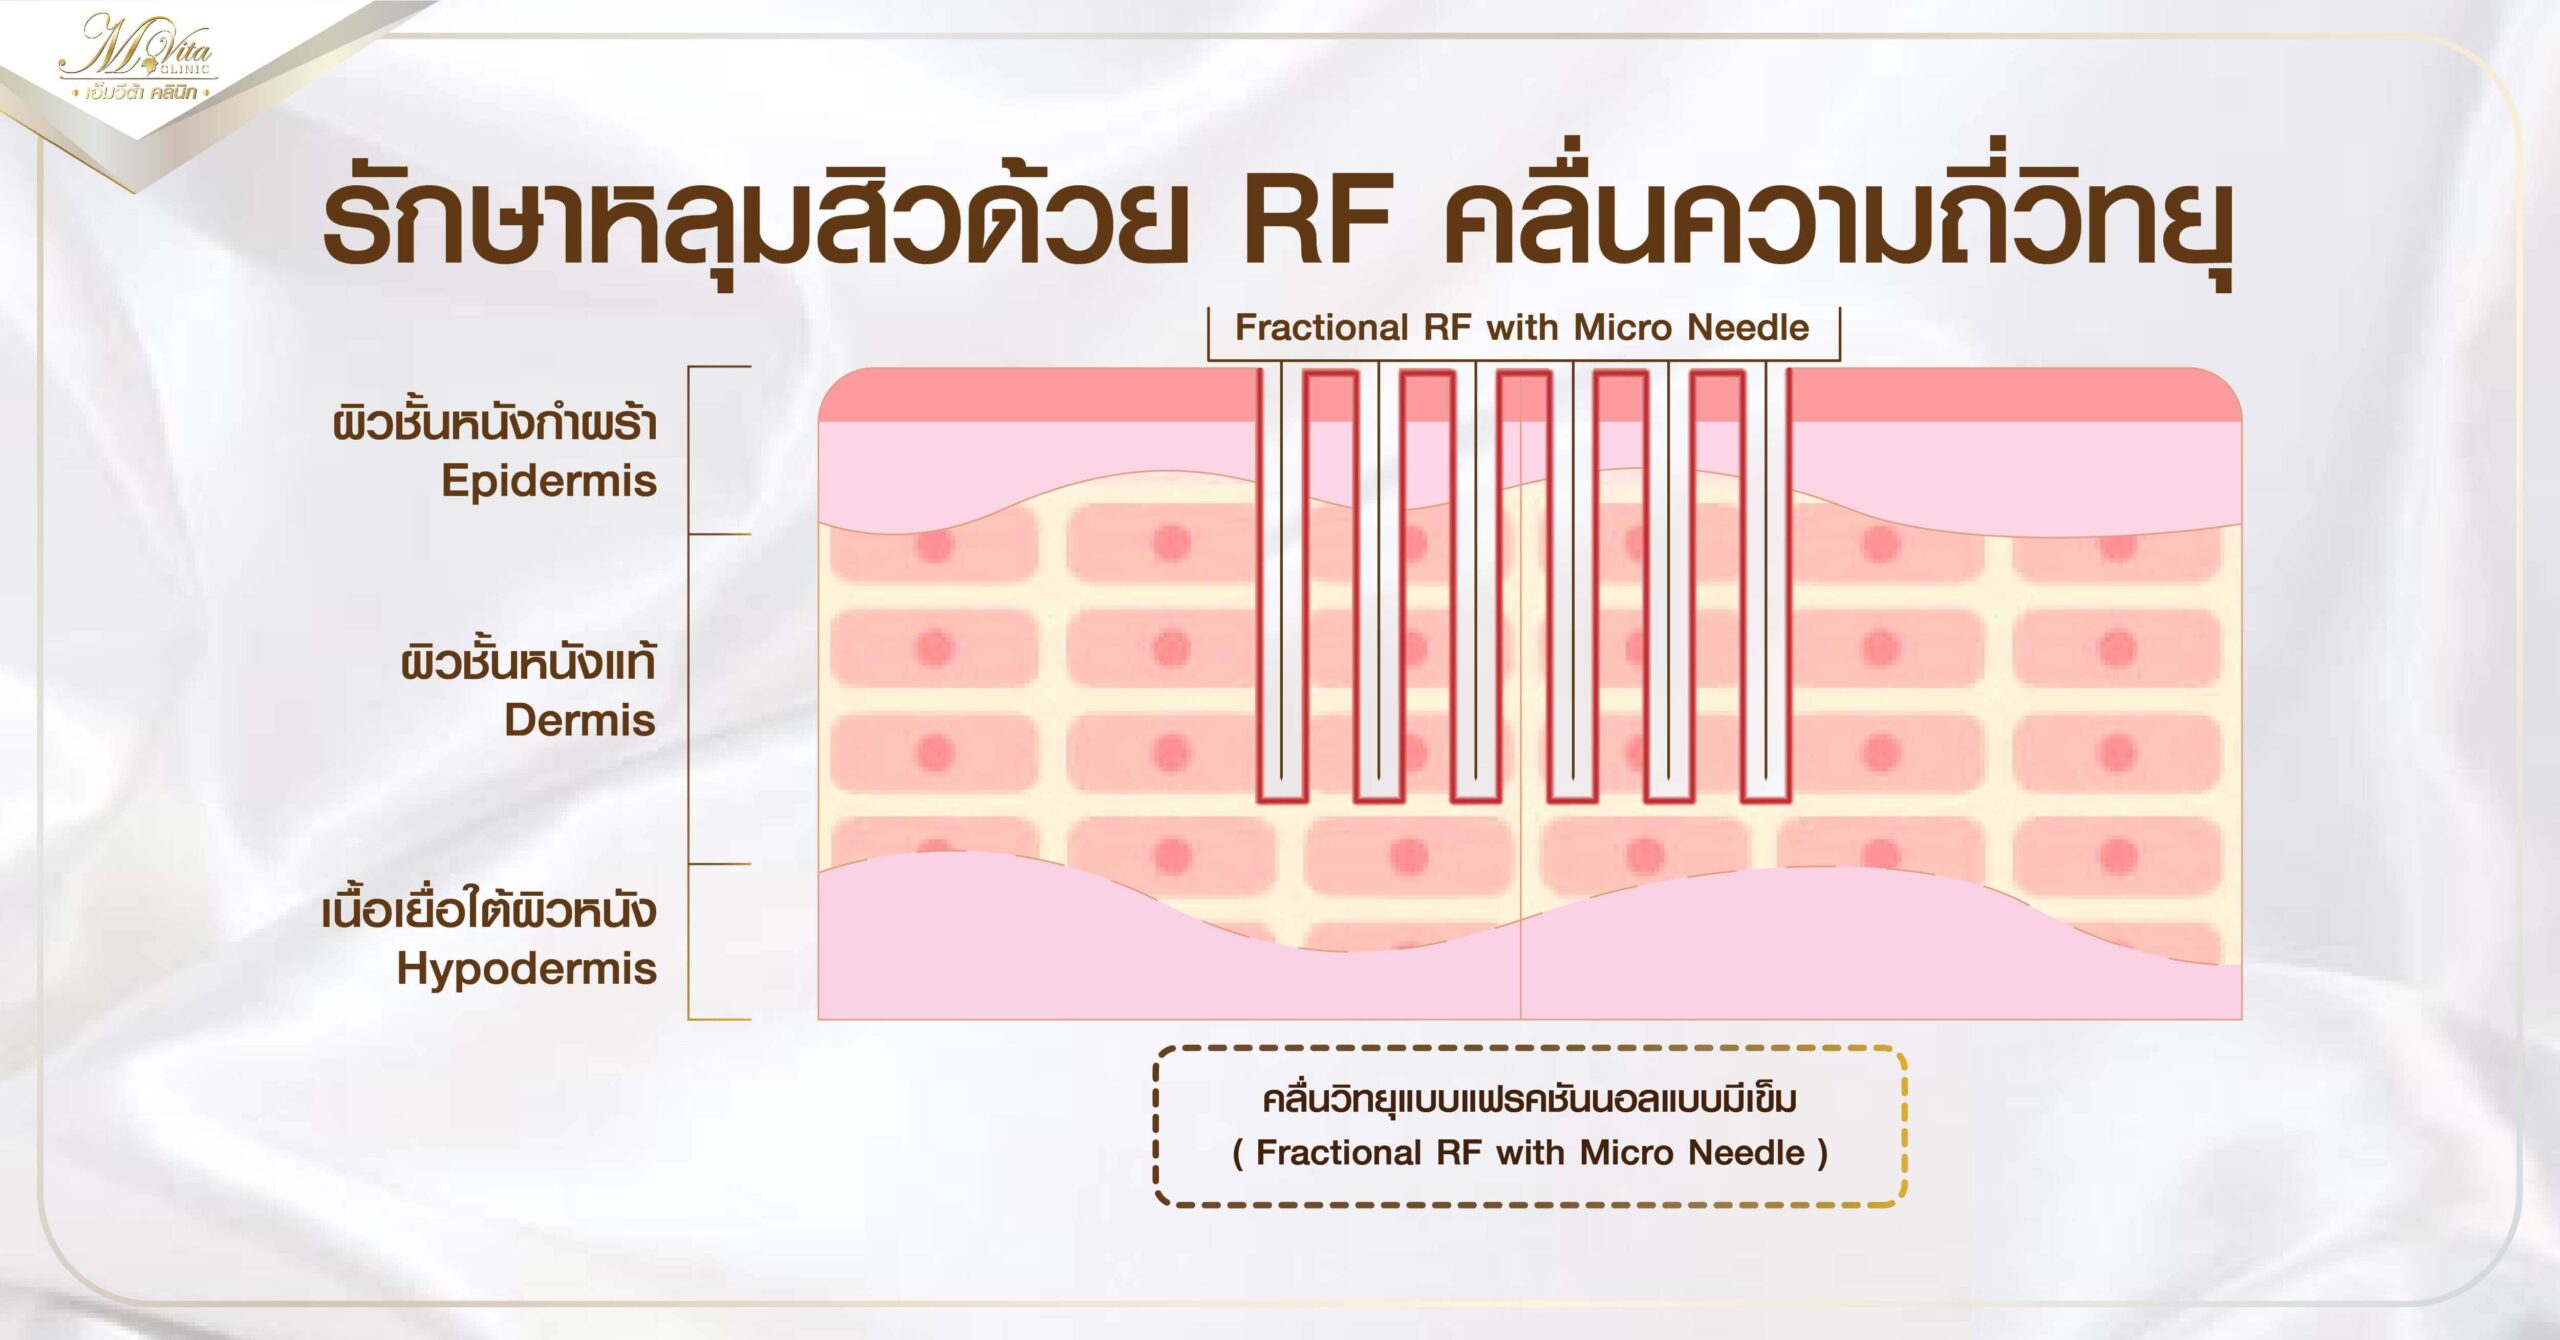 รักษาหลุมสิวด้วย RF คลื่นความถี่วิทยุ